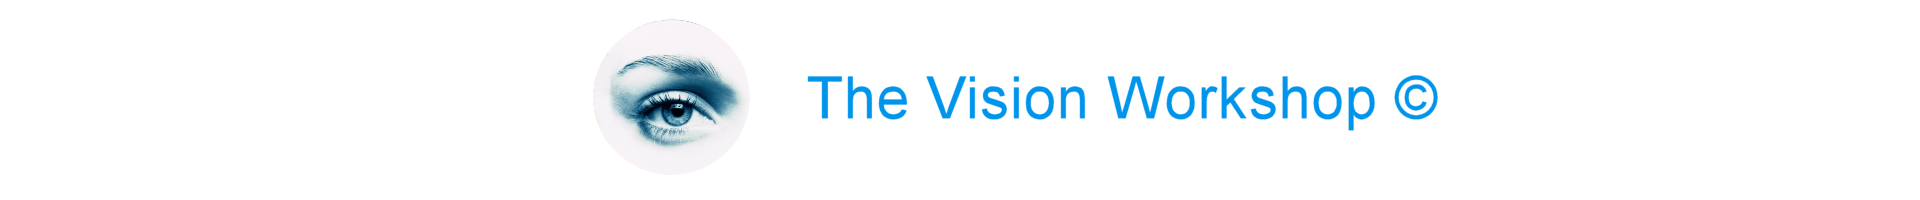 The vision workshop